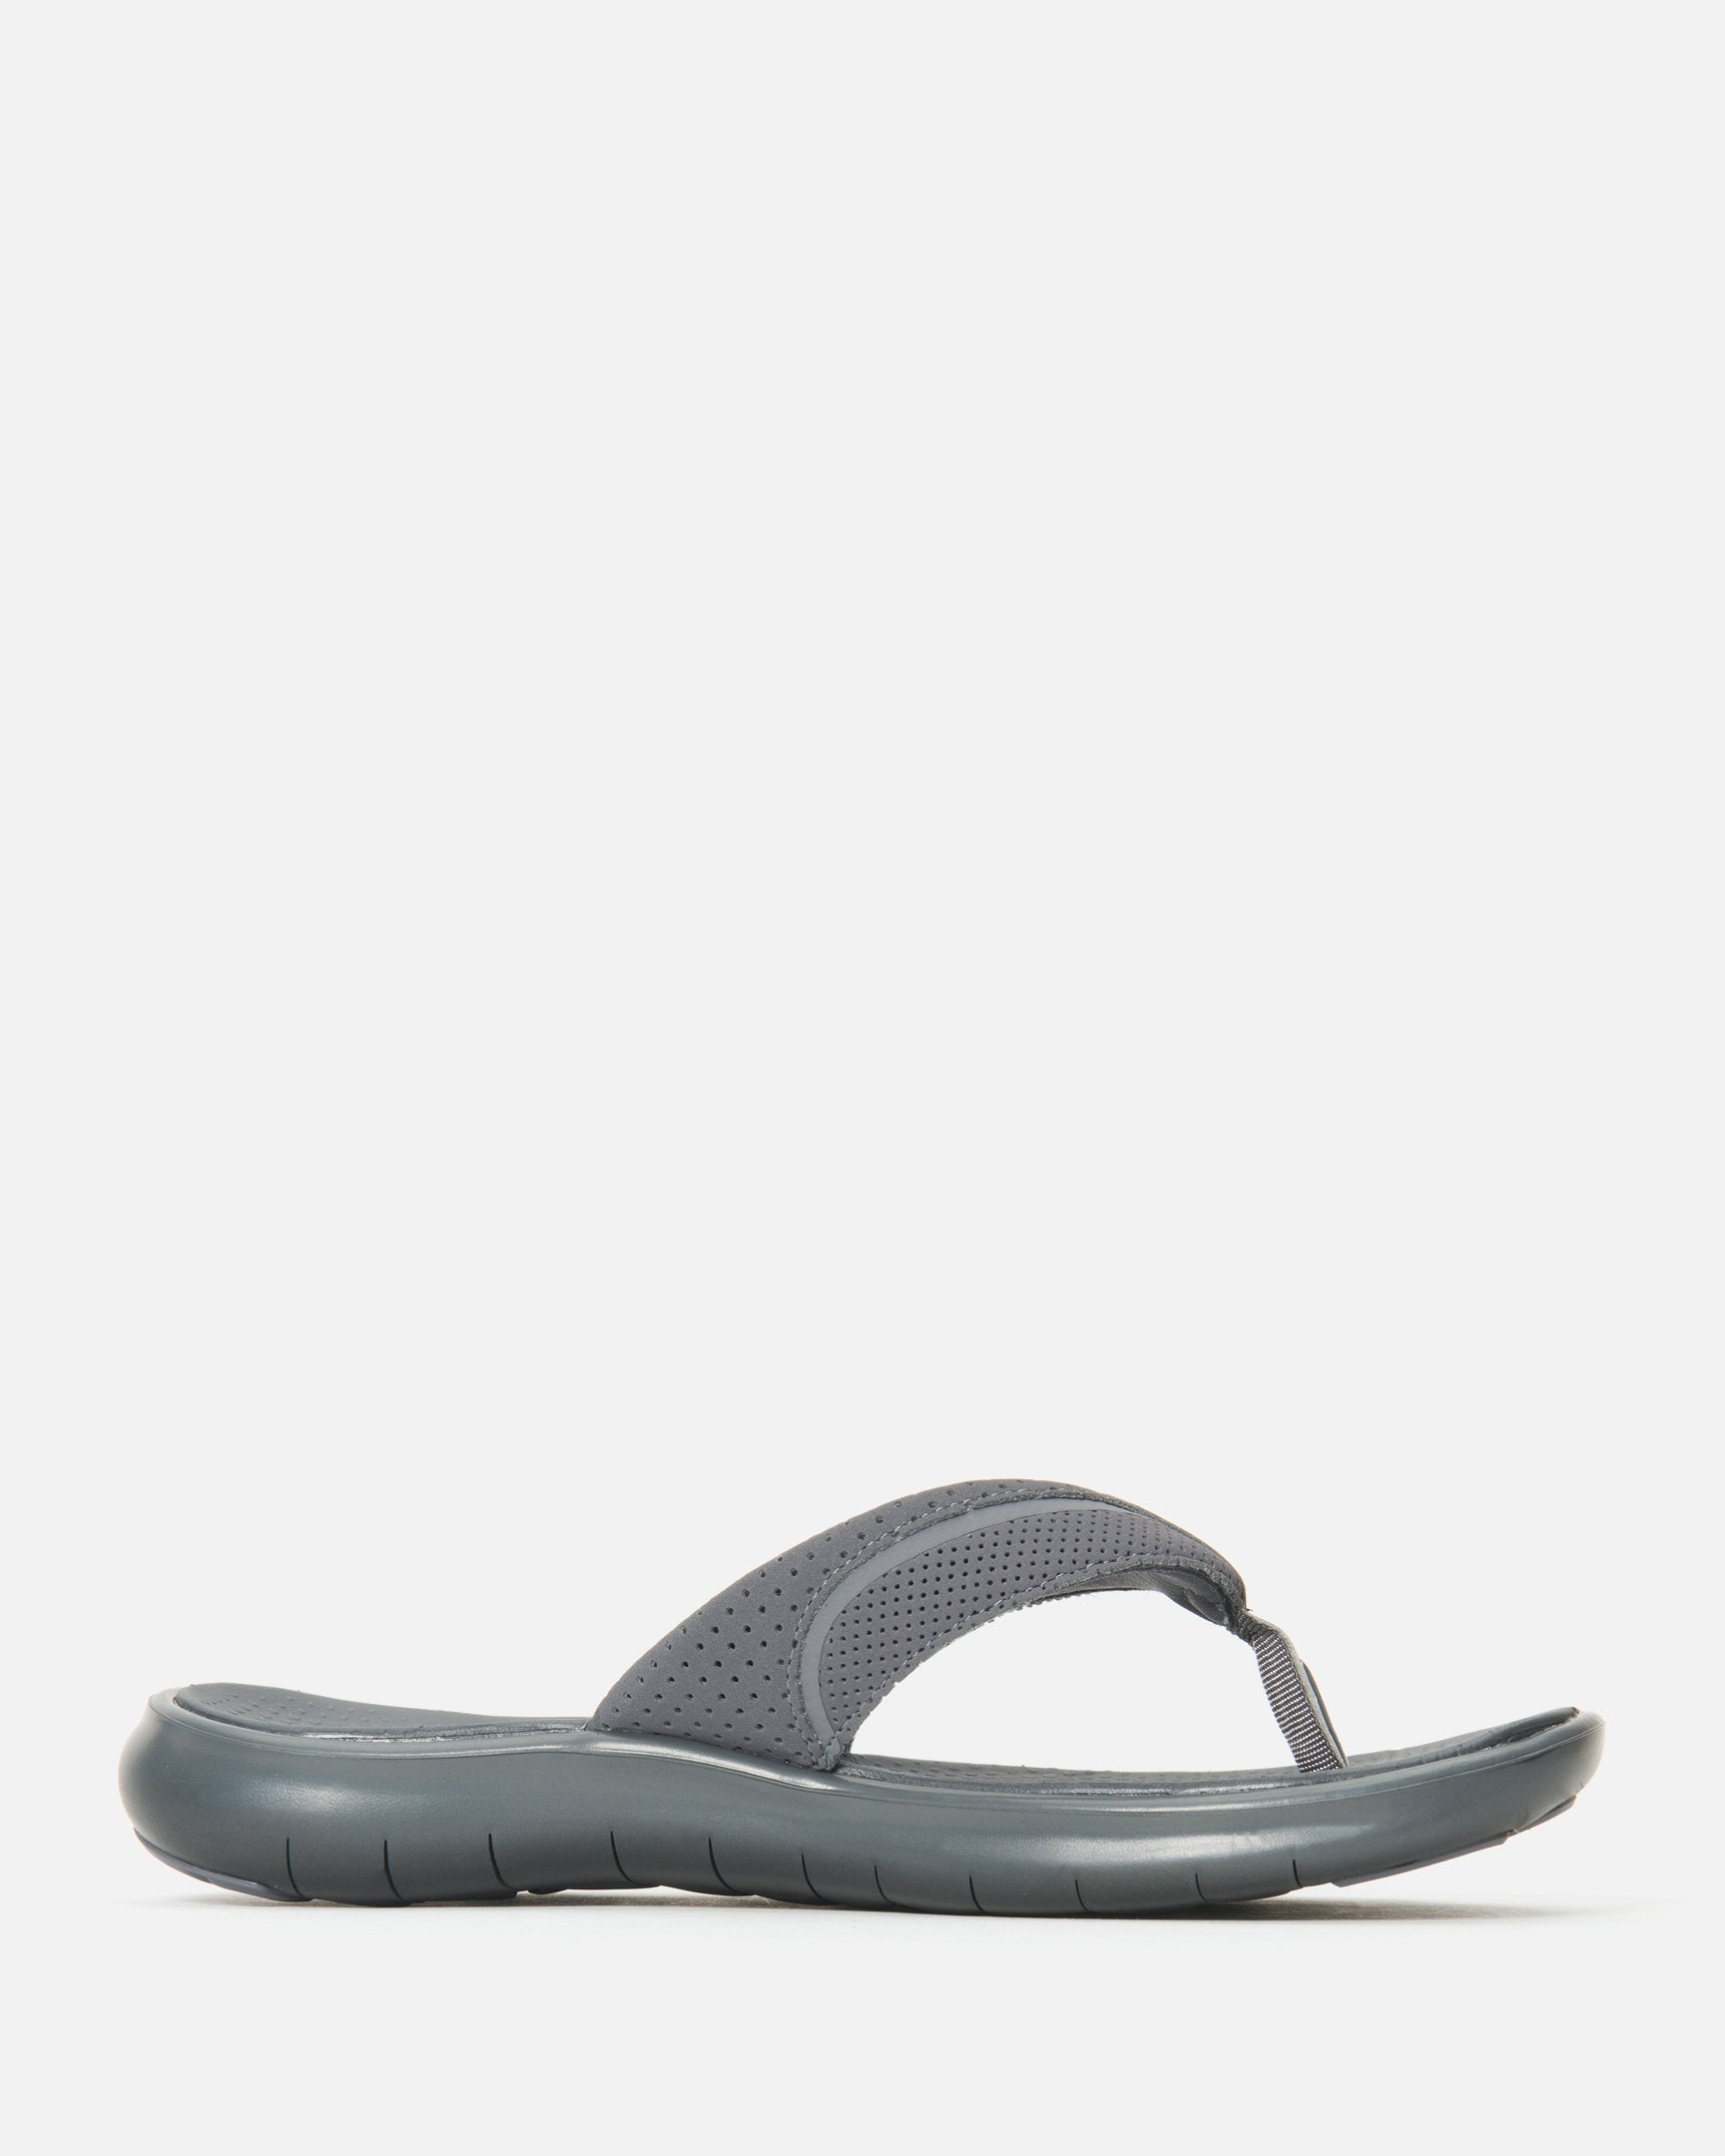 Men's Sandals \u0026 Slides | Hurley